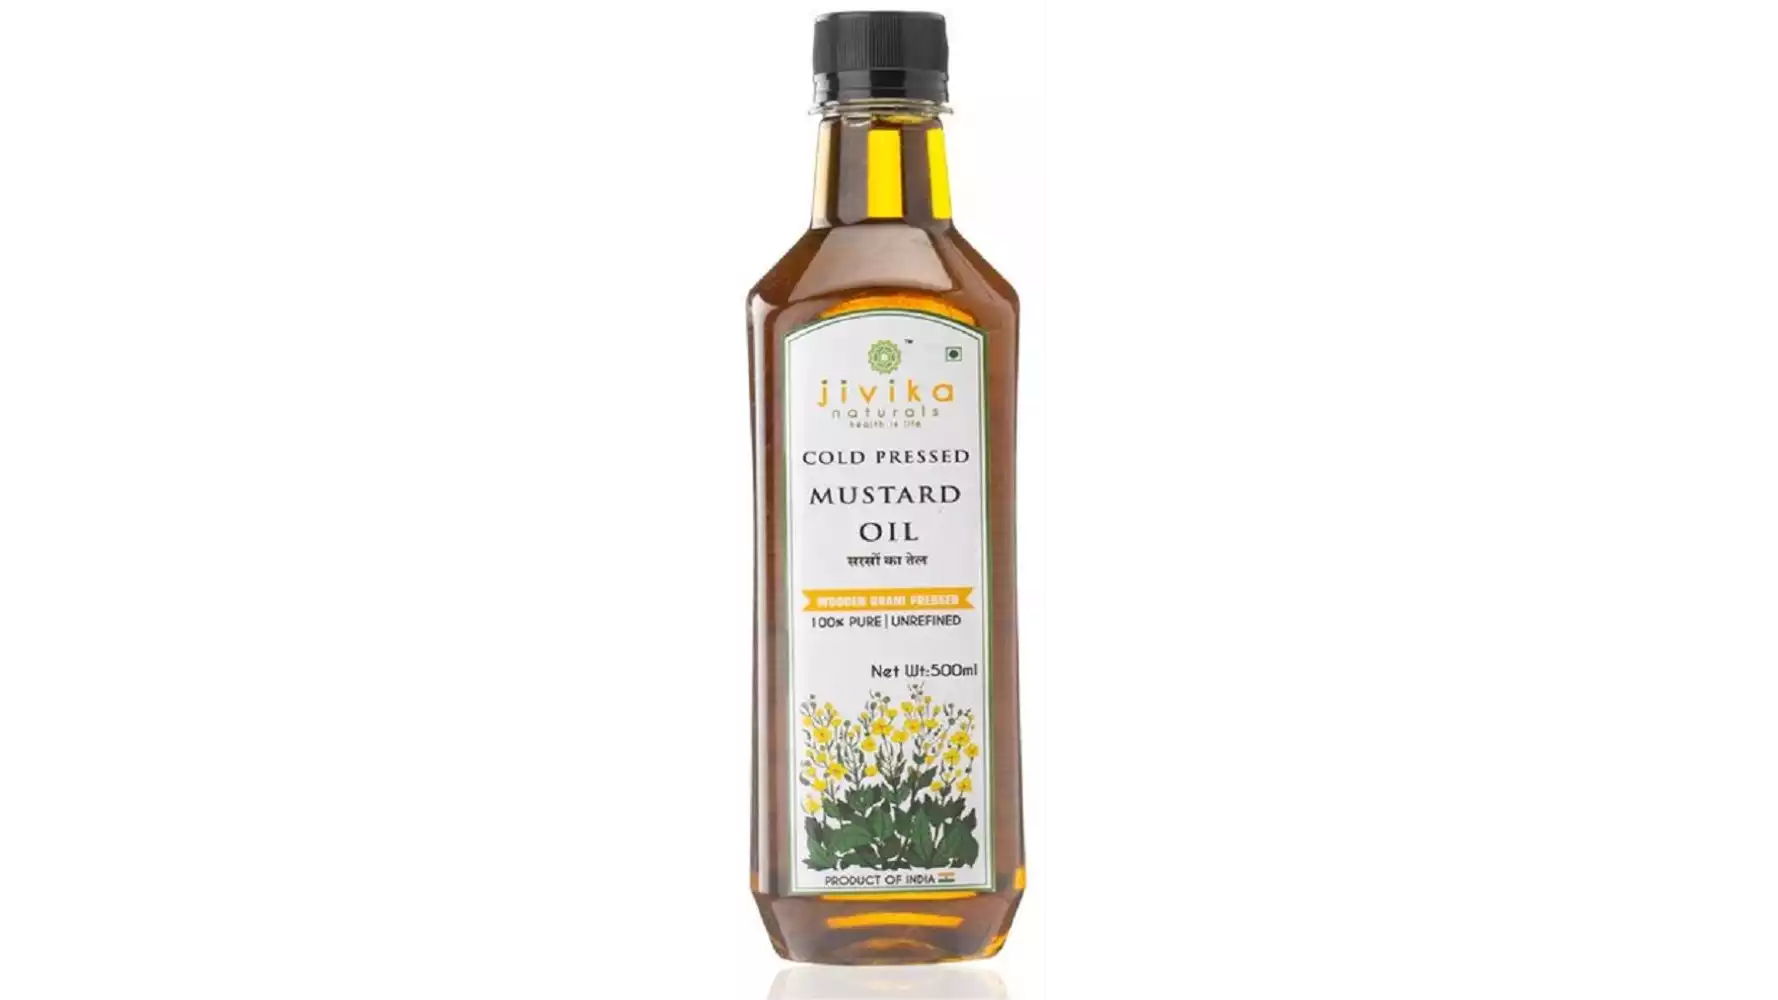 Jivika Naturals Cold Pressed Mustard Oil (500ml)